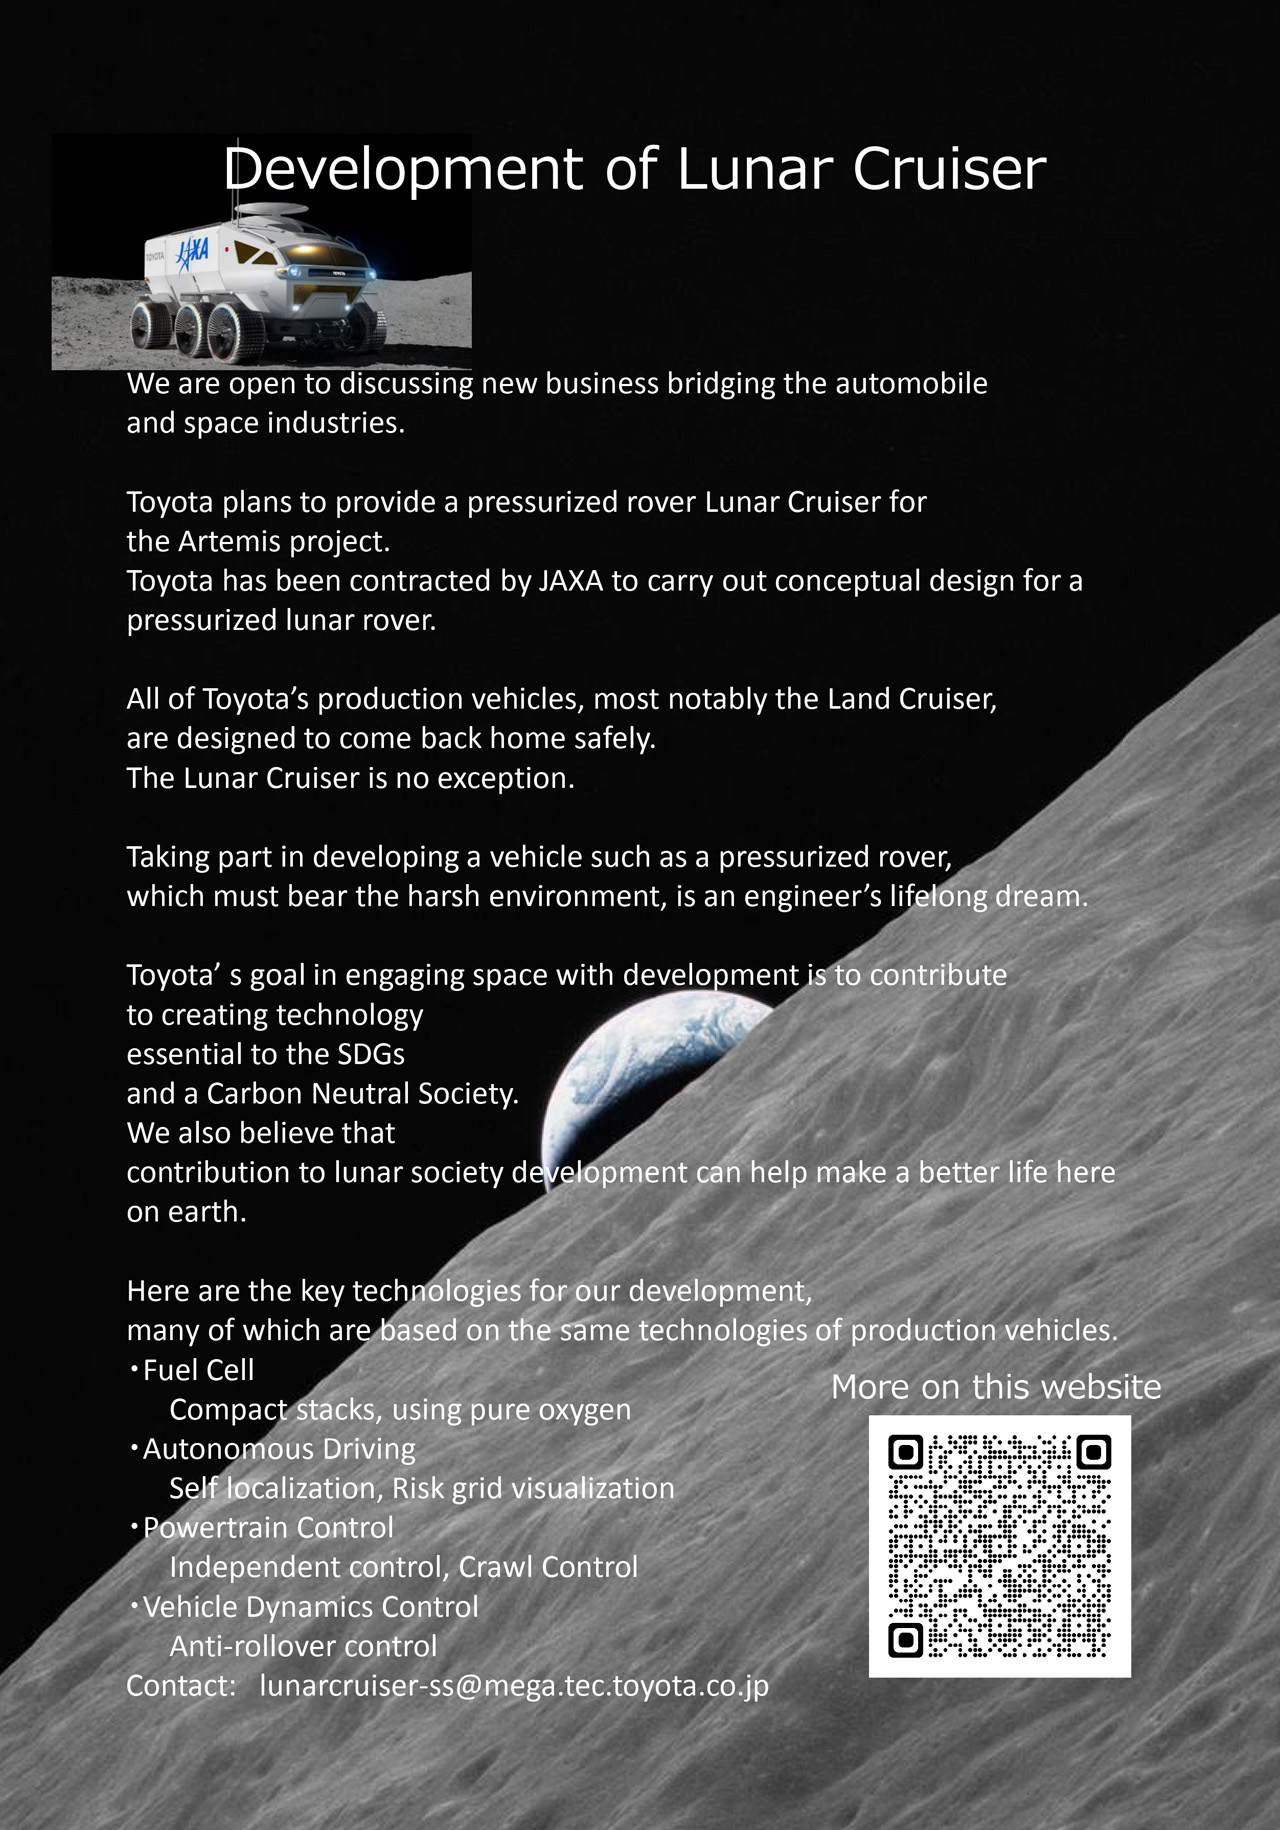 38th SPACE SYMPOSIUM (Information on Lunar Cruiser Development)